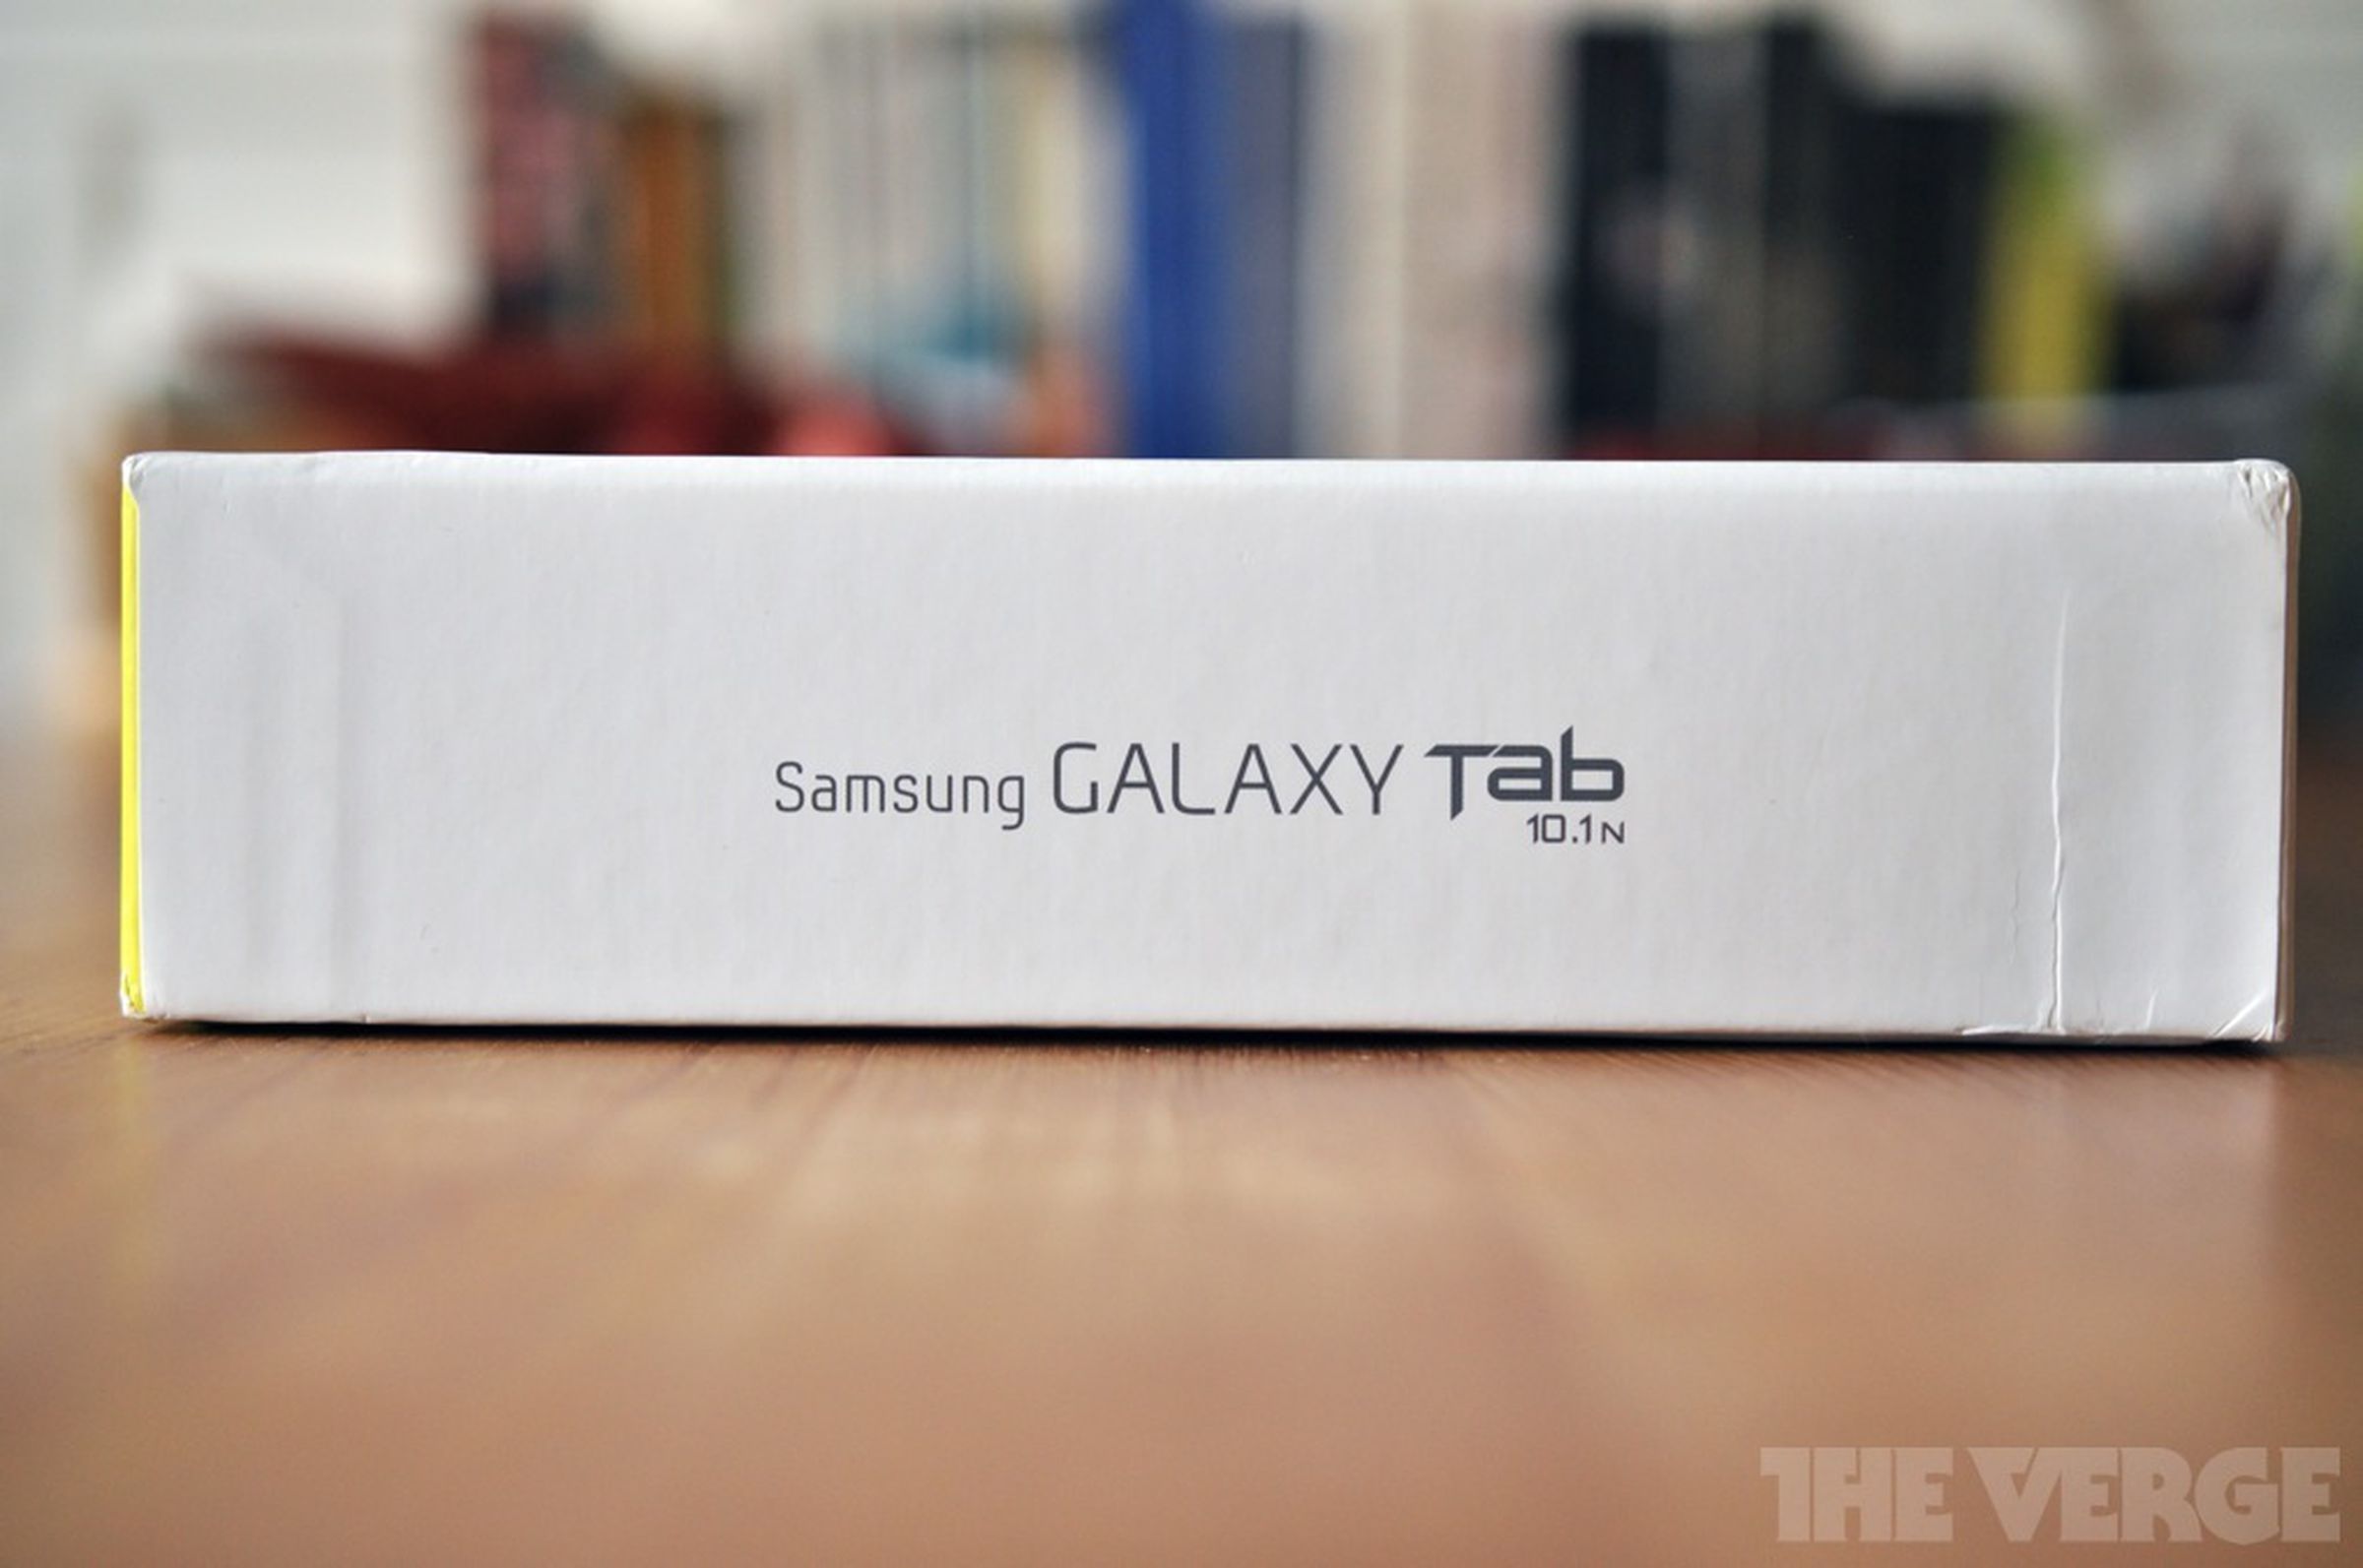 Samsung Galaxy Tab 10.1N hands-on gallery